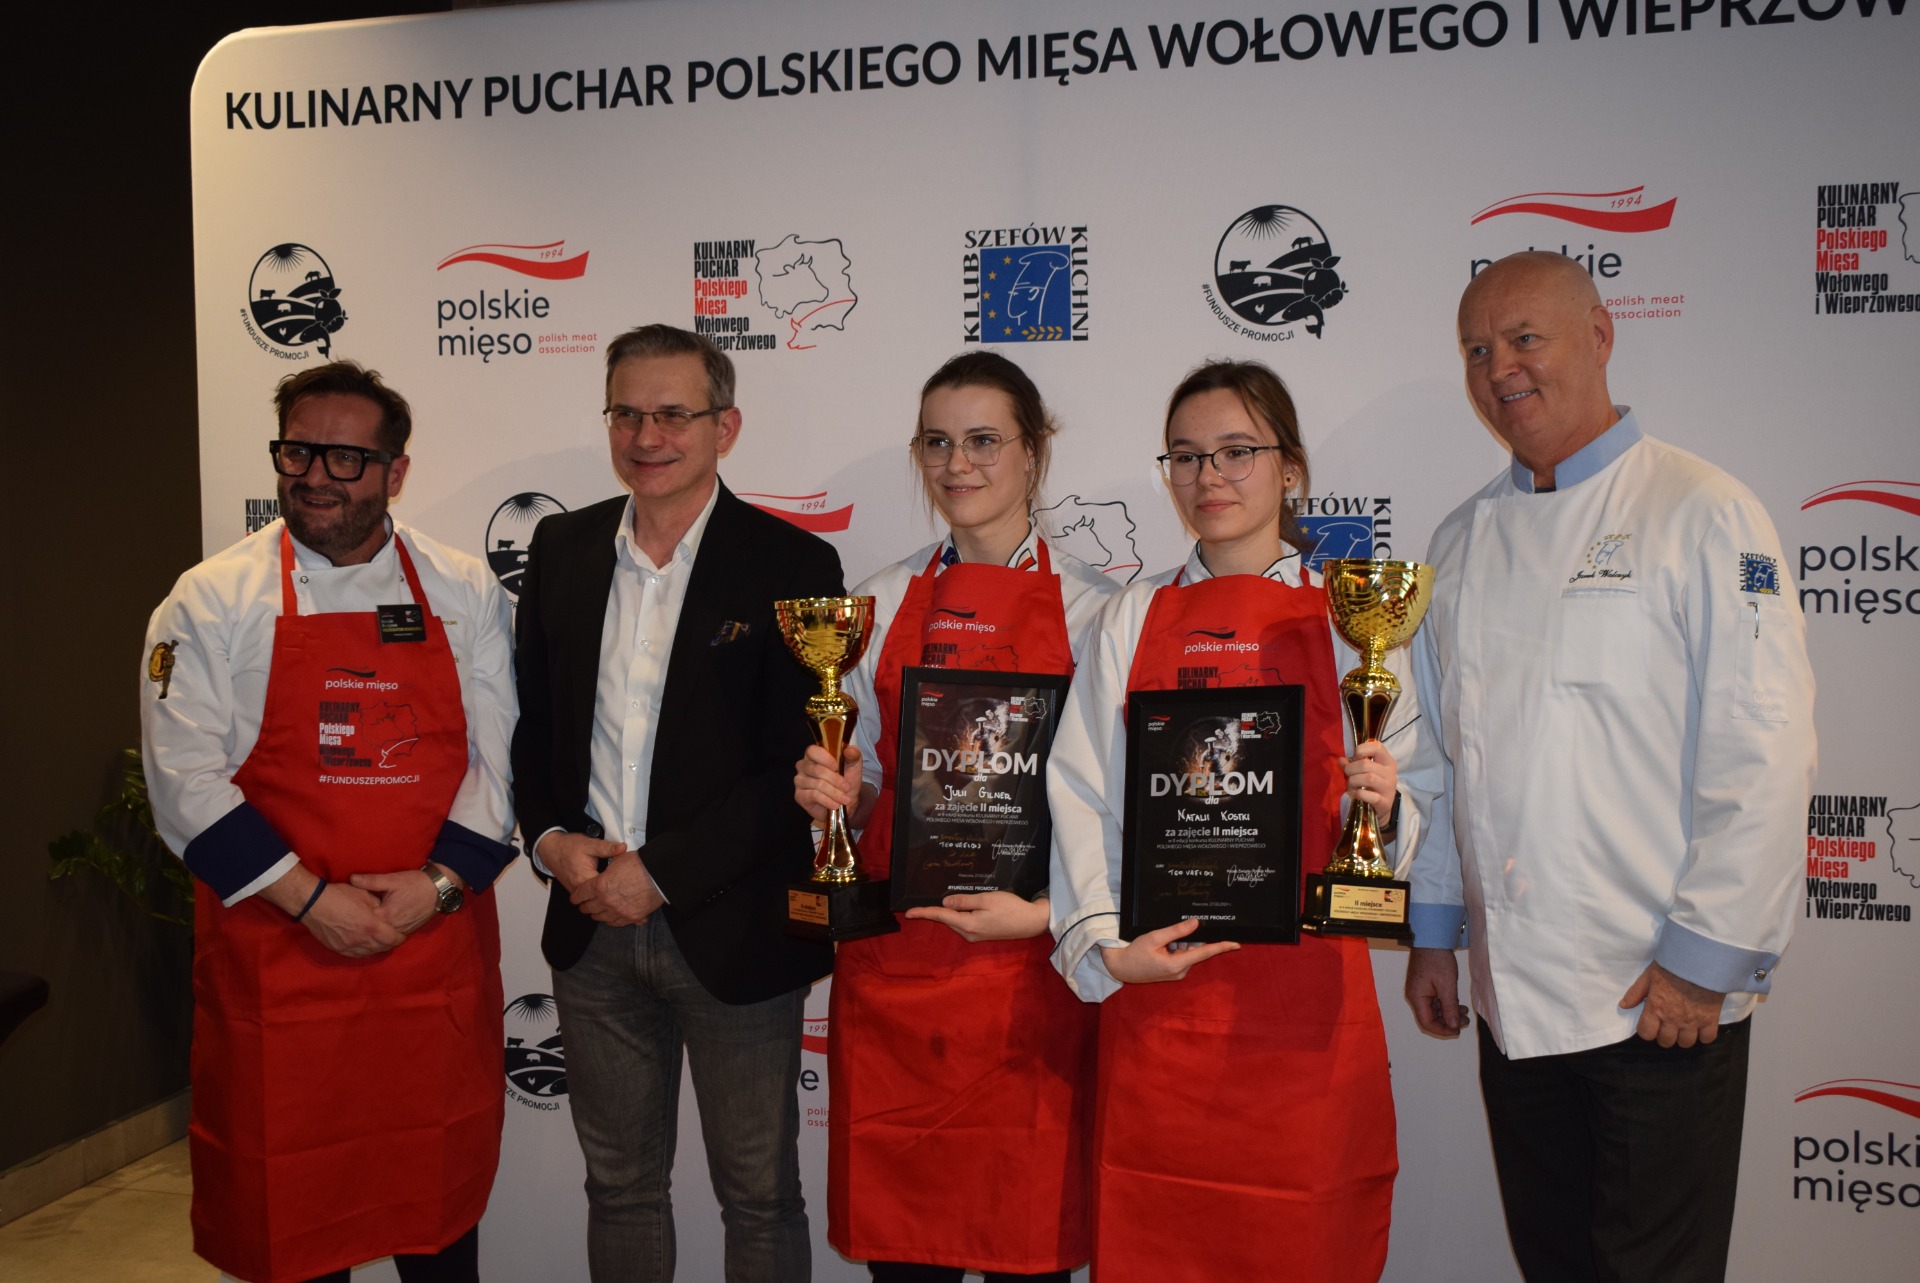 Kulinarny Puchar Polskiego Mięsa Wołowego i Wieprzowego rozstrzygnięty - Obrazek 1